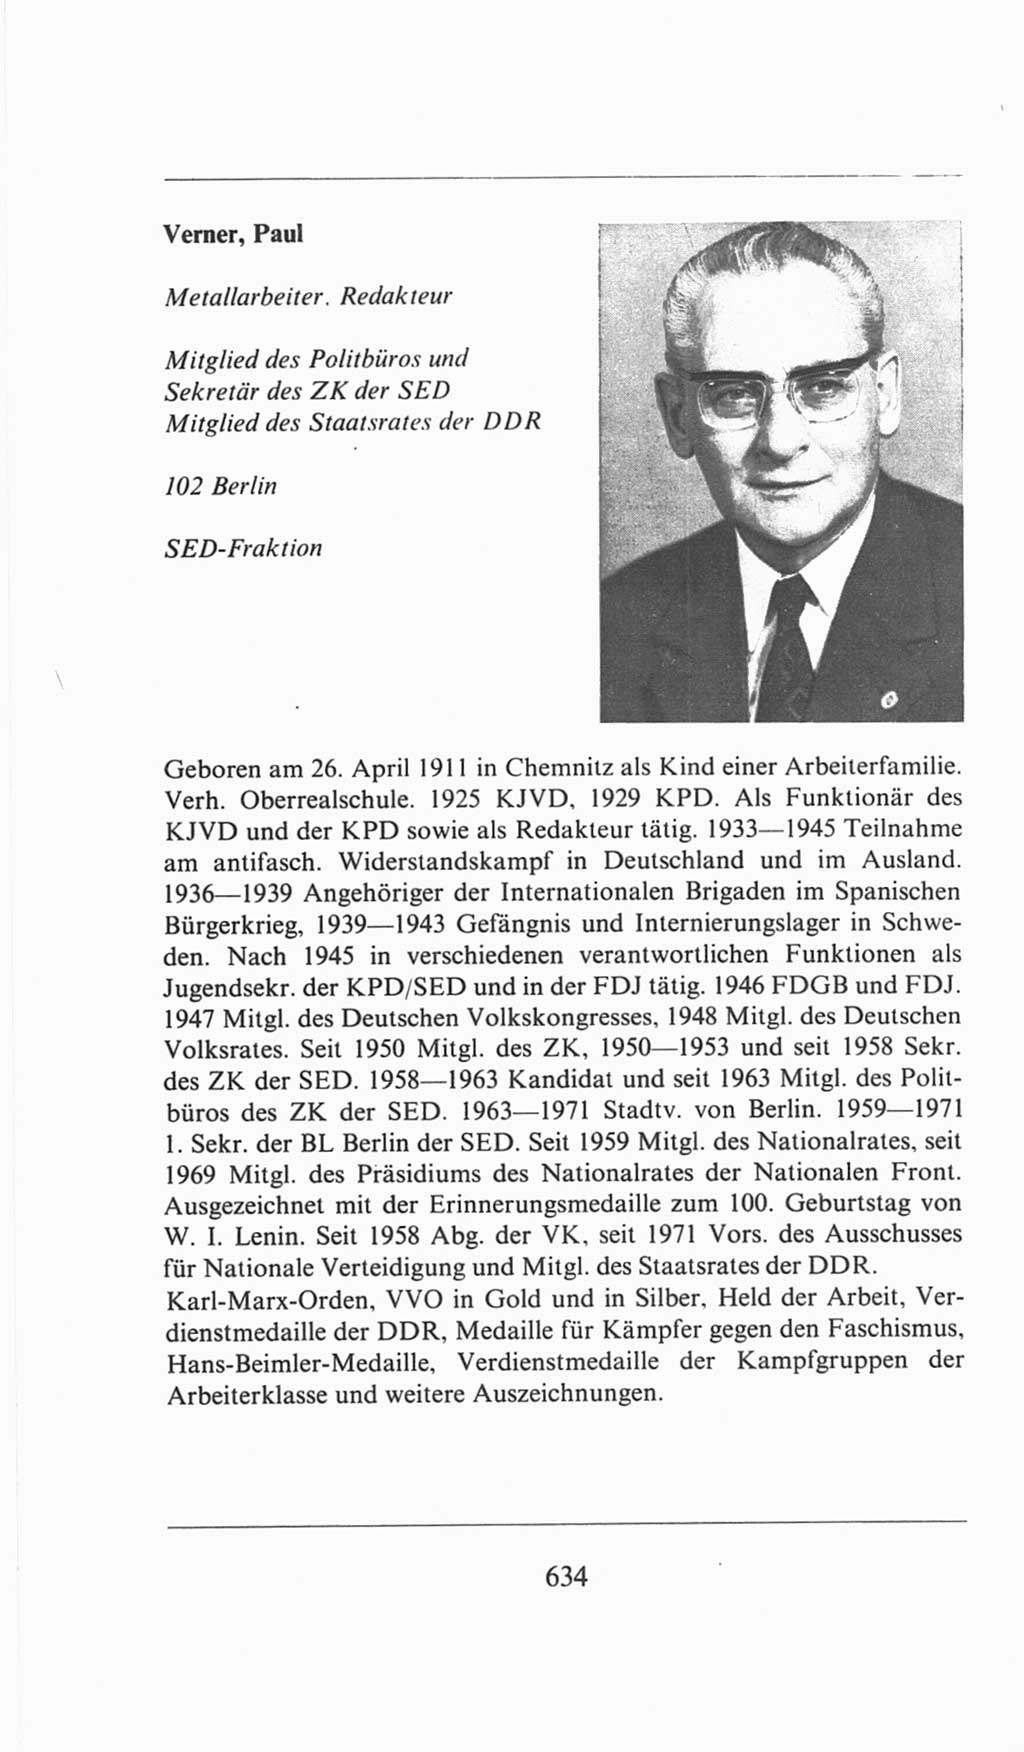 Volkskammer (VK) der Deutschen Demokratischen Republik (DDR), 6. Wahlperiode 1971-1976, Seite 634 (VK. DDR 6. WP. 1971-1976, S. 634)